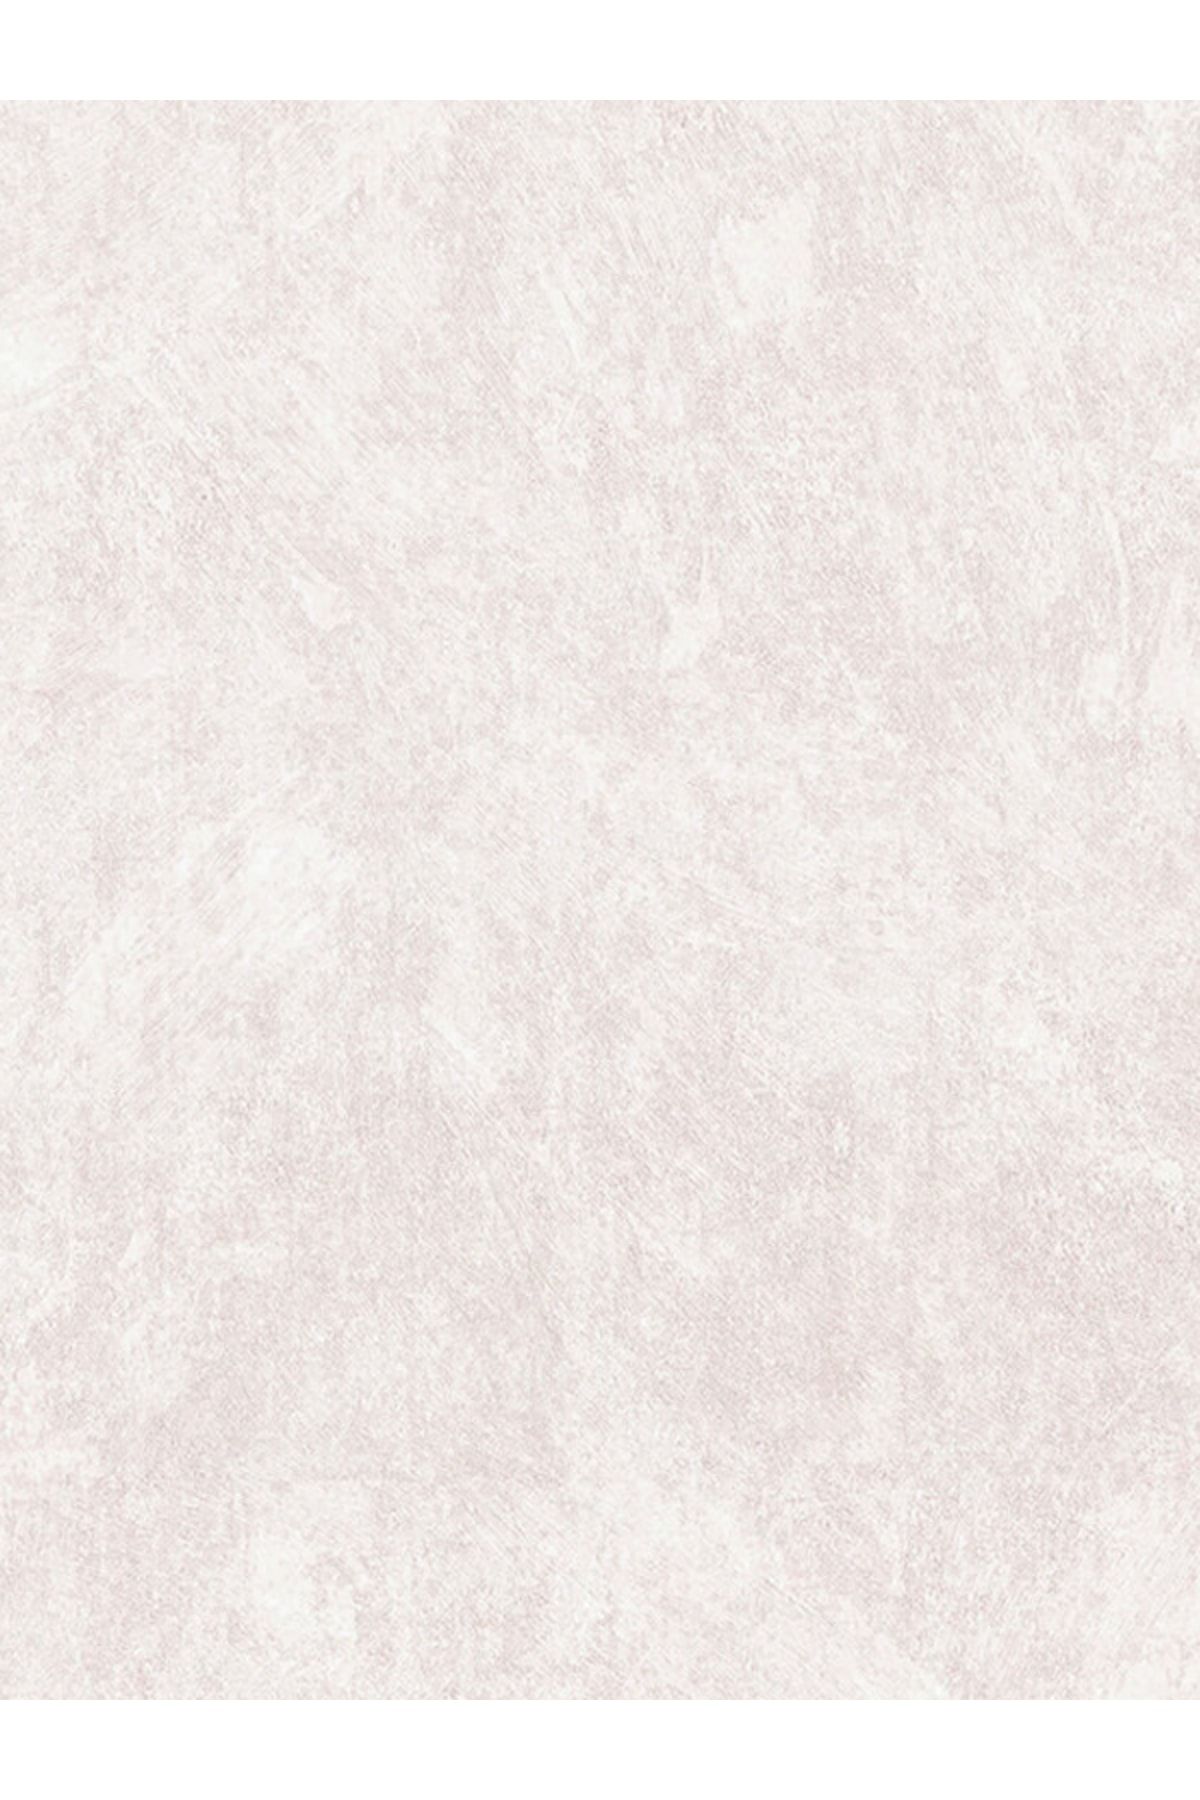 Decowall Decoparati Maki Beyaz-vizon Düz Duvar Kağıdı 405-03